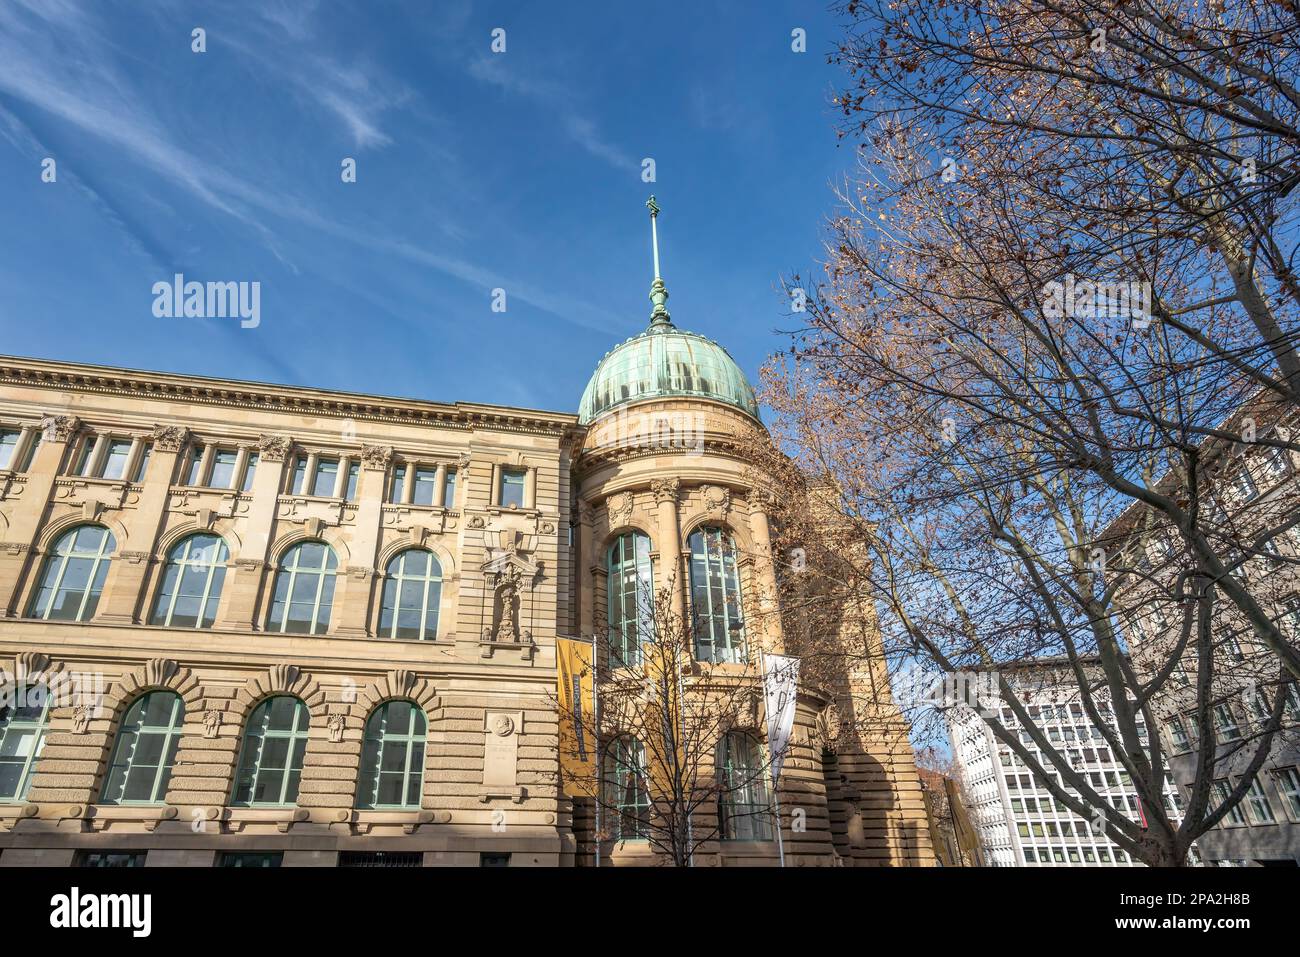 Haus der Wirtschaft (House of Economy) - Stuttgart, Germany Stock Photo